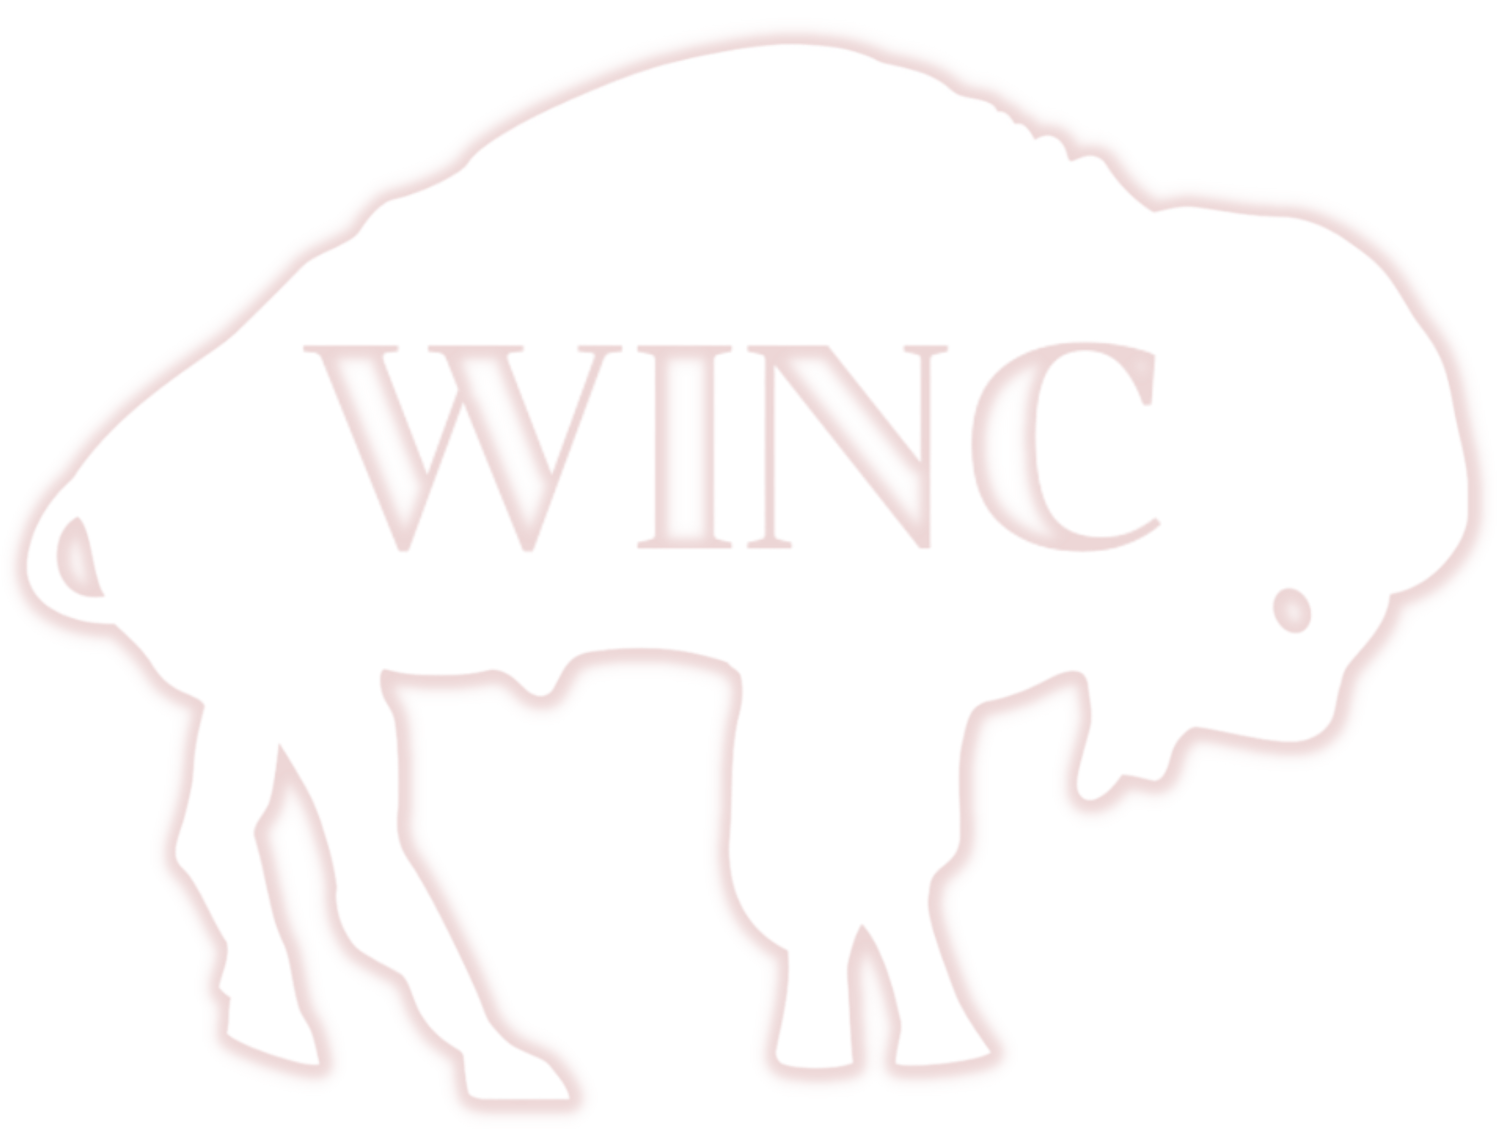 WINC Buffalo